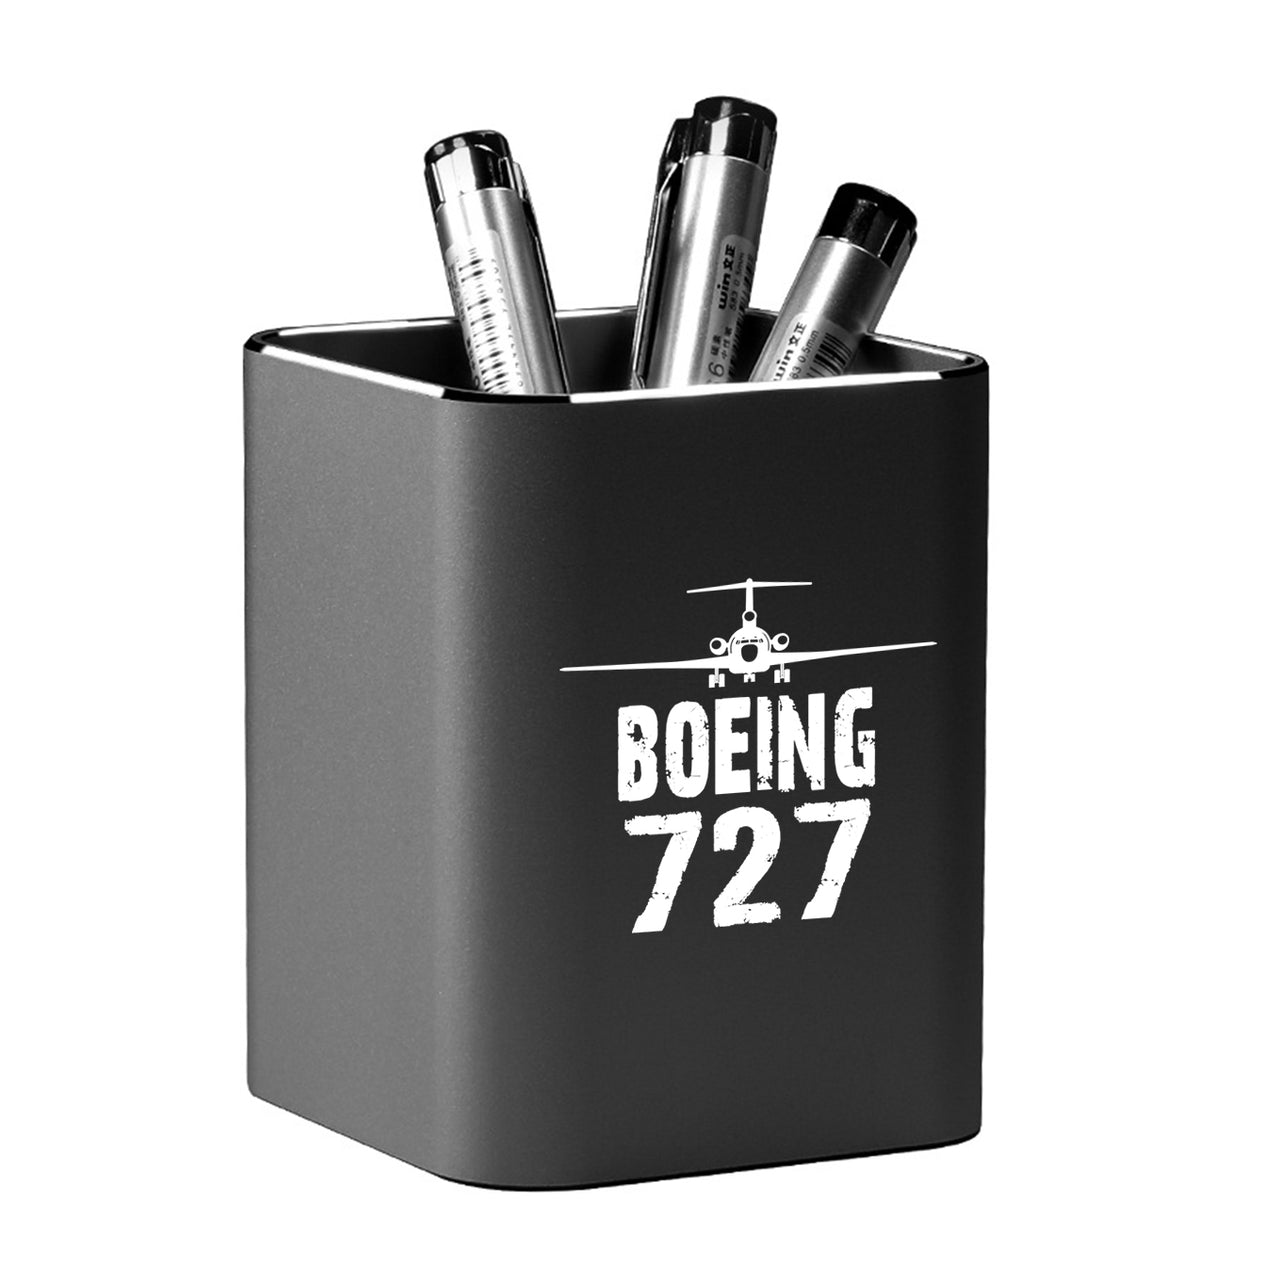 Boeing 727 & Plane Designed Aluminium Alloy Pen Holders